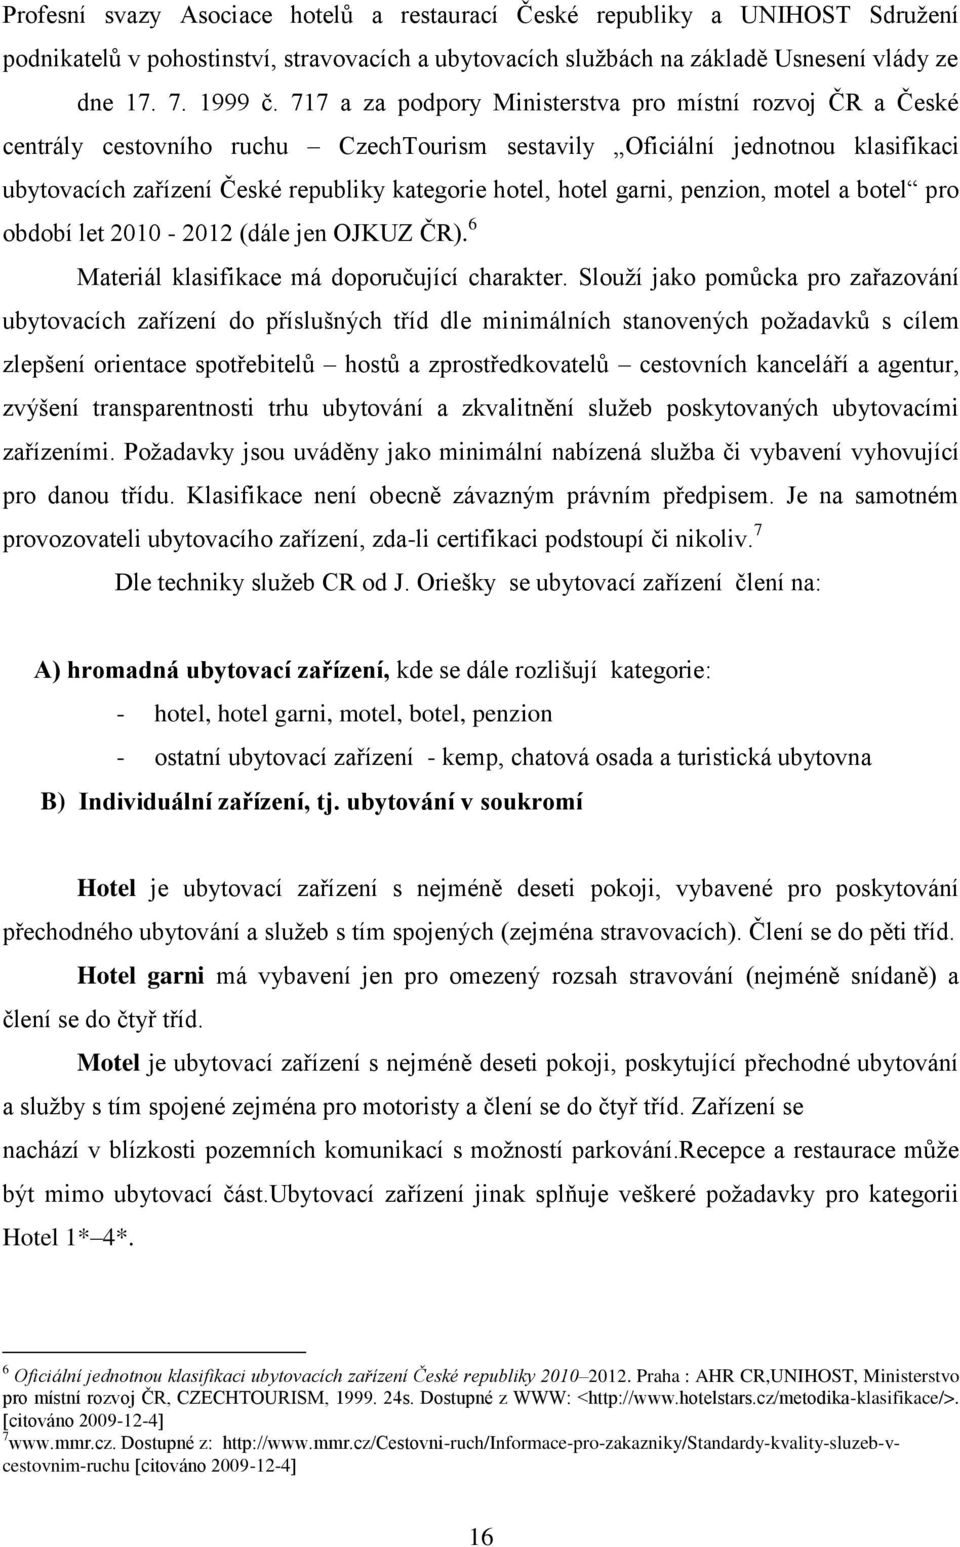 garni, penzion, motel a botel pro období let 2010-2012 (dále jen OJKUZ ČR). 6 Materiál klasifikace má doporučující charakter.